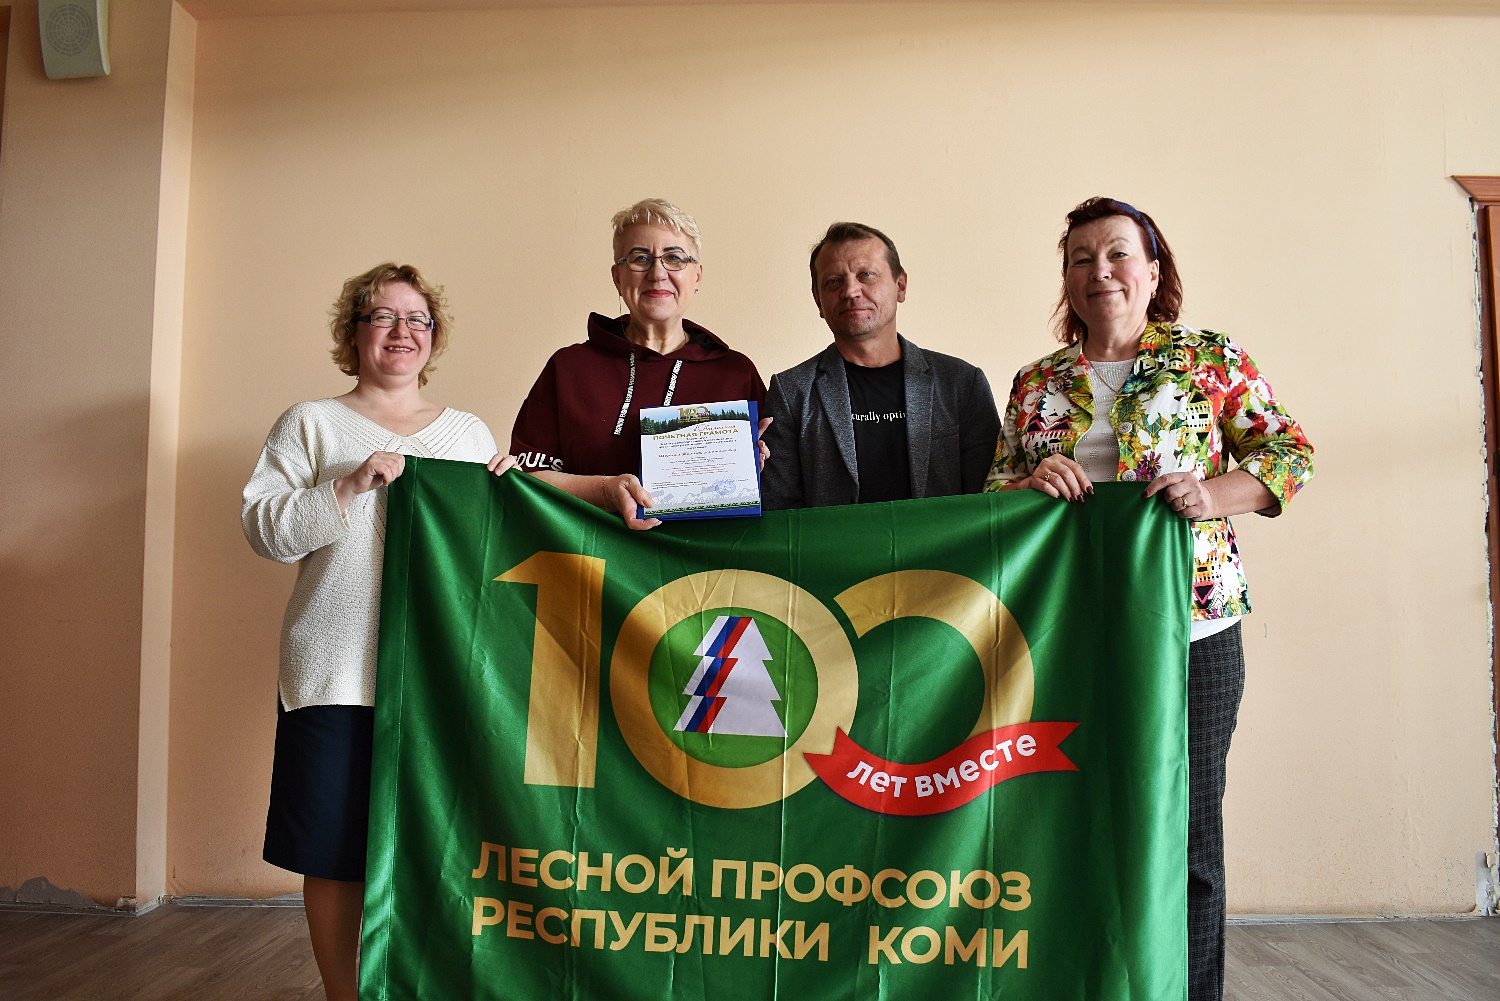 100 членов Лесного профсоюза в Коми будут награждены Почетными грамотами